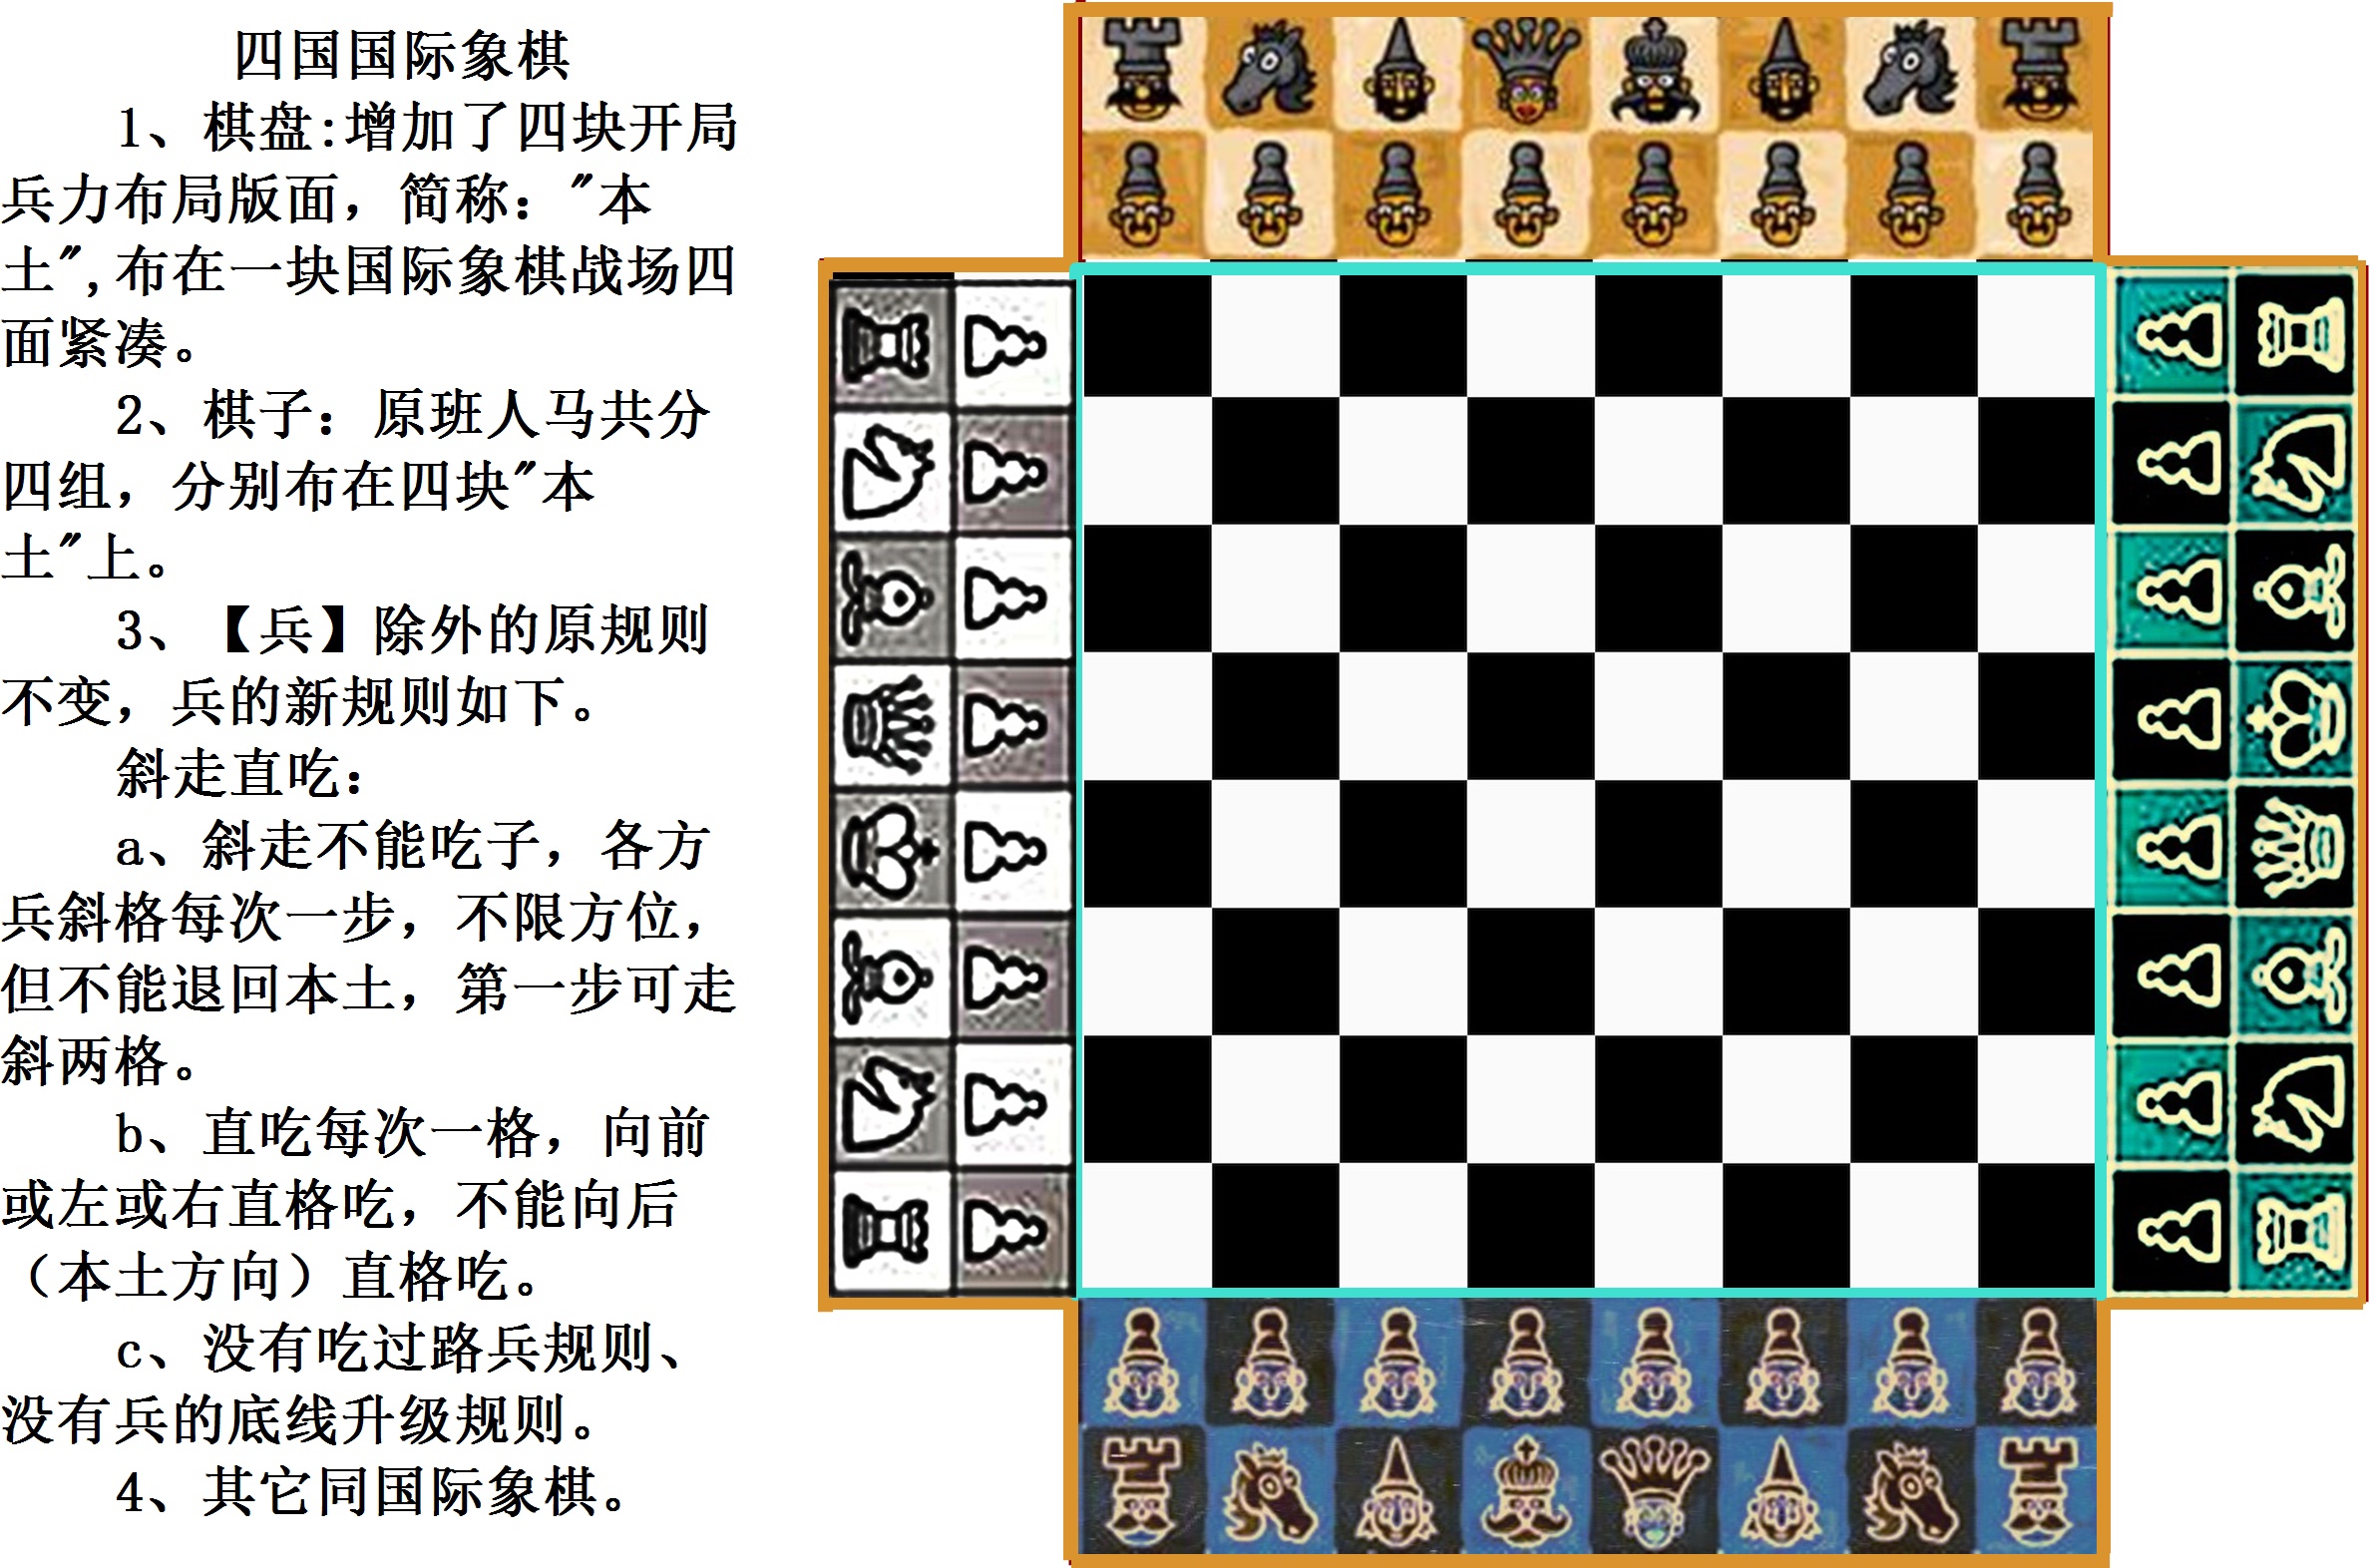 四國西洋棋